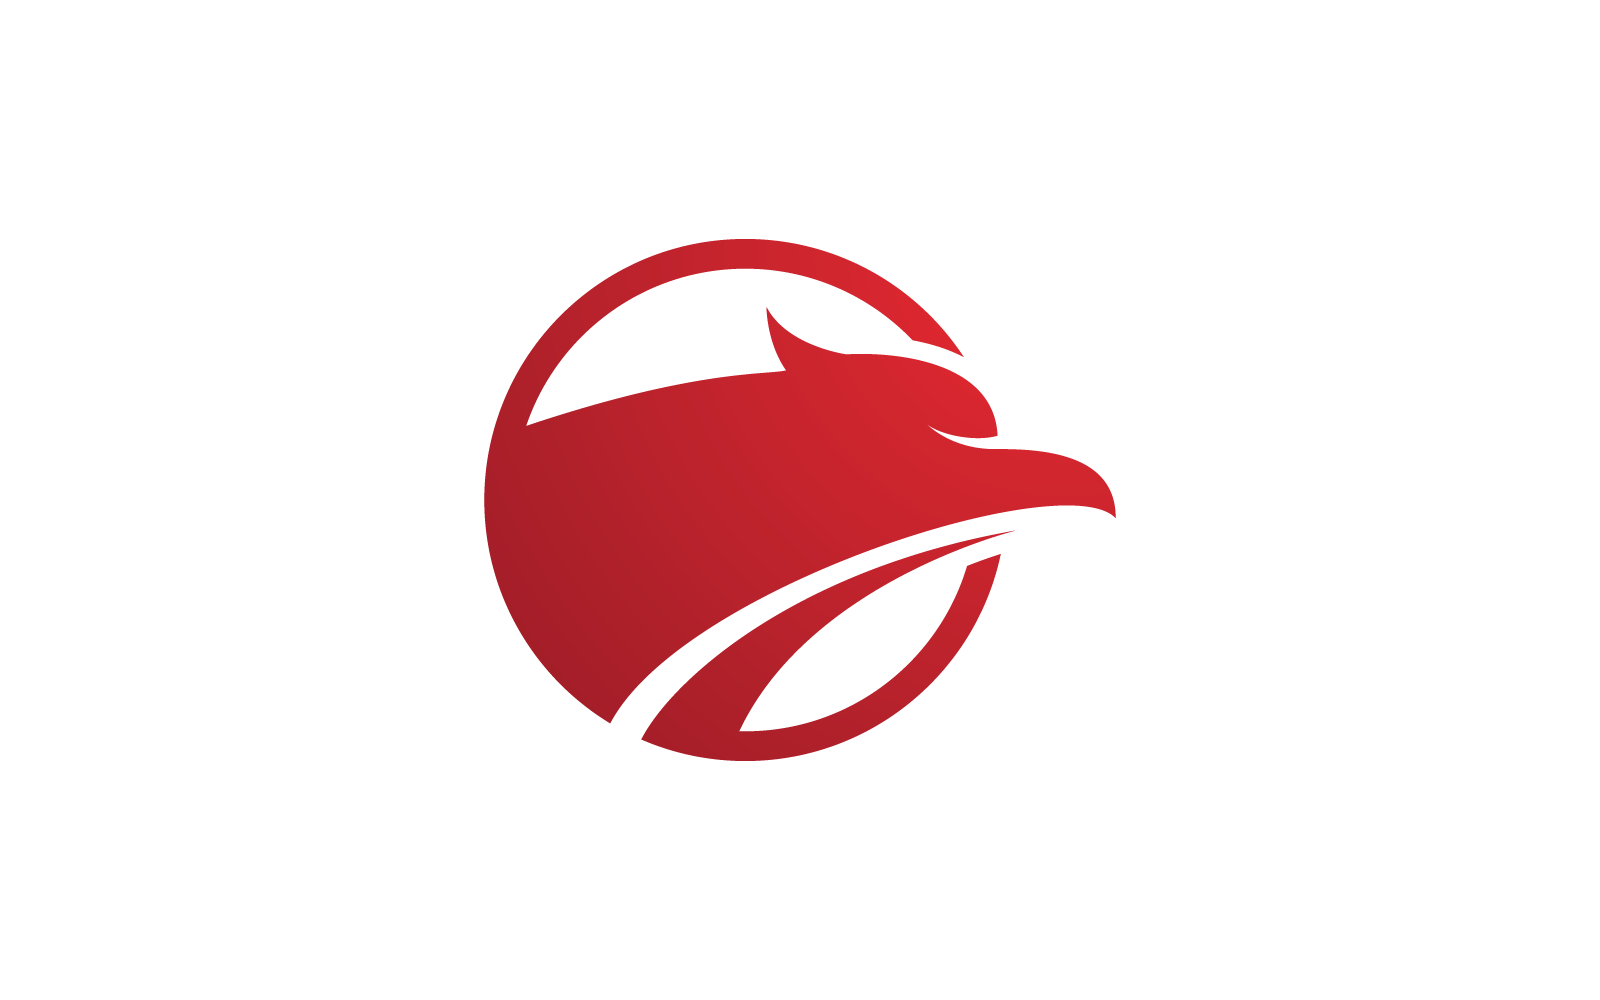 Falcon eagle bird illustration logo vector design Logo Template